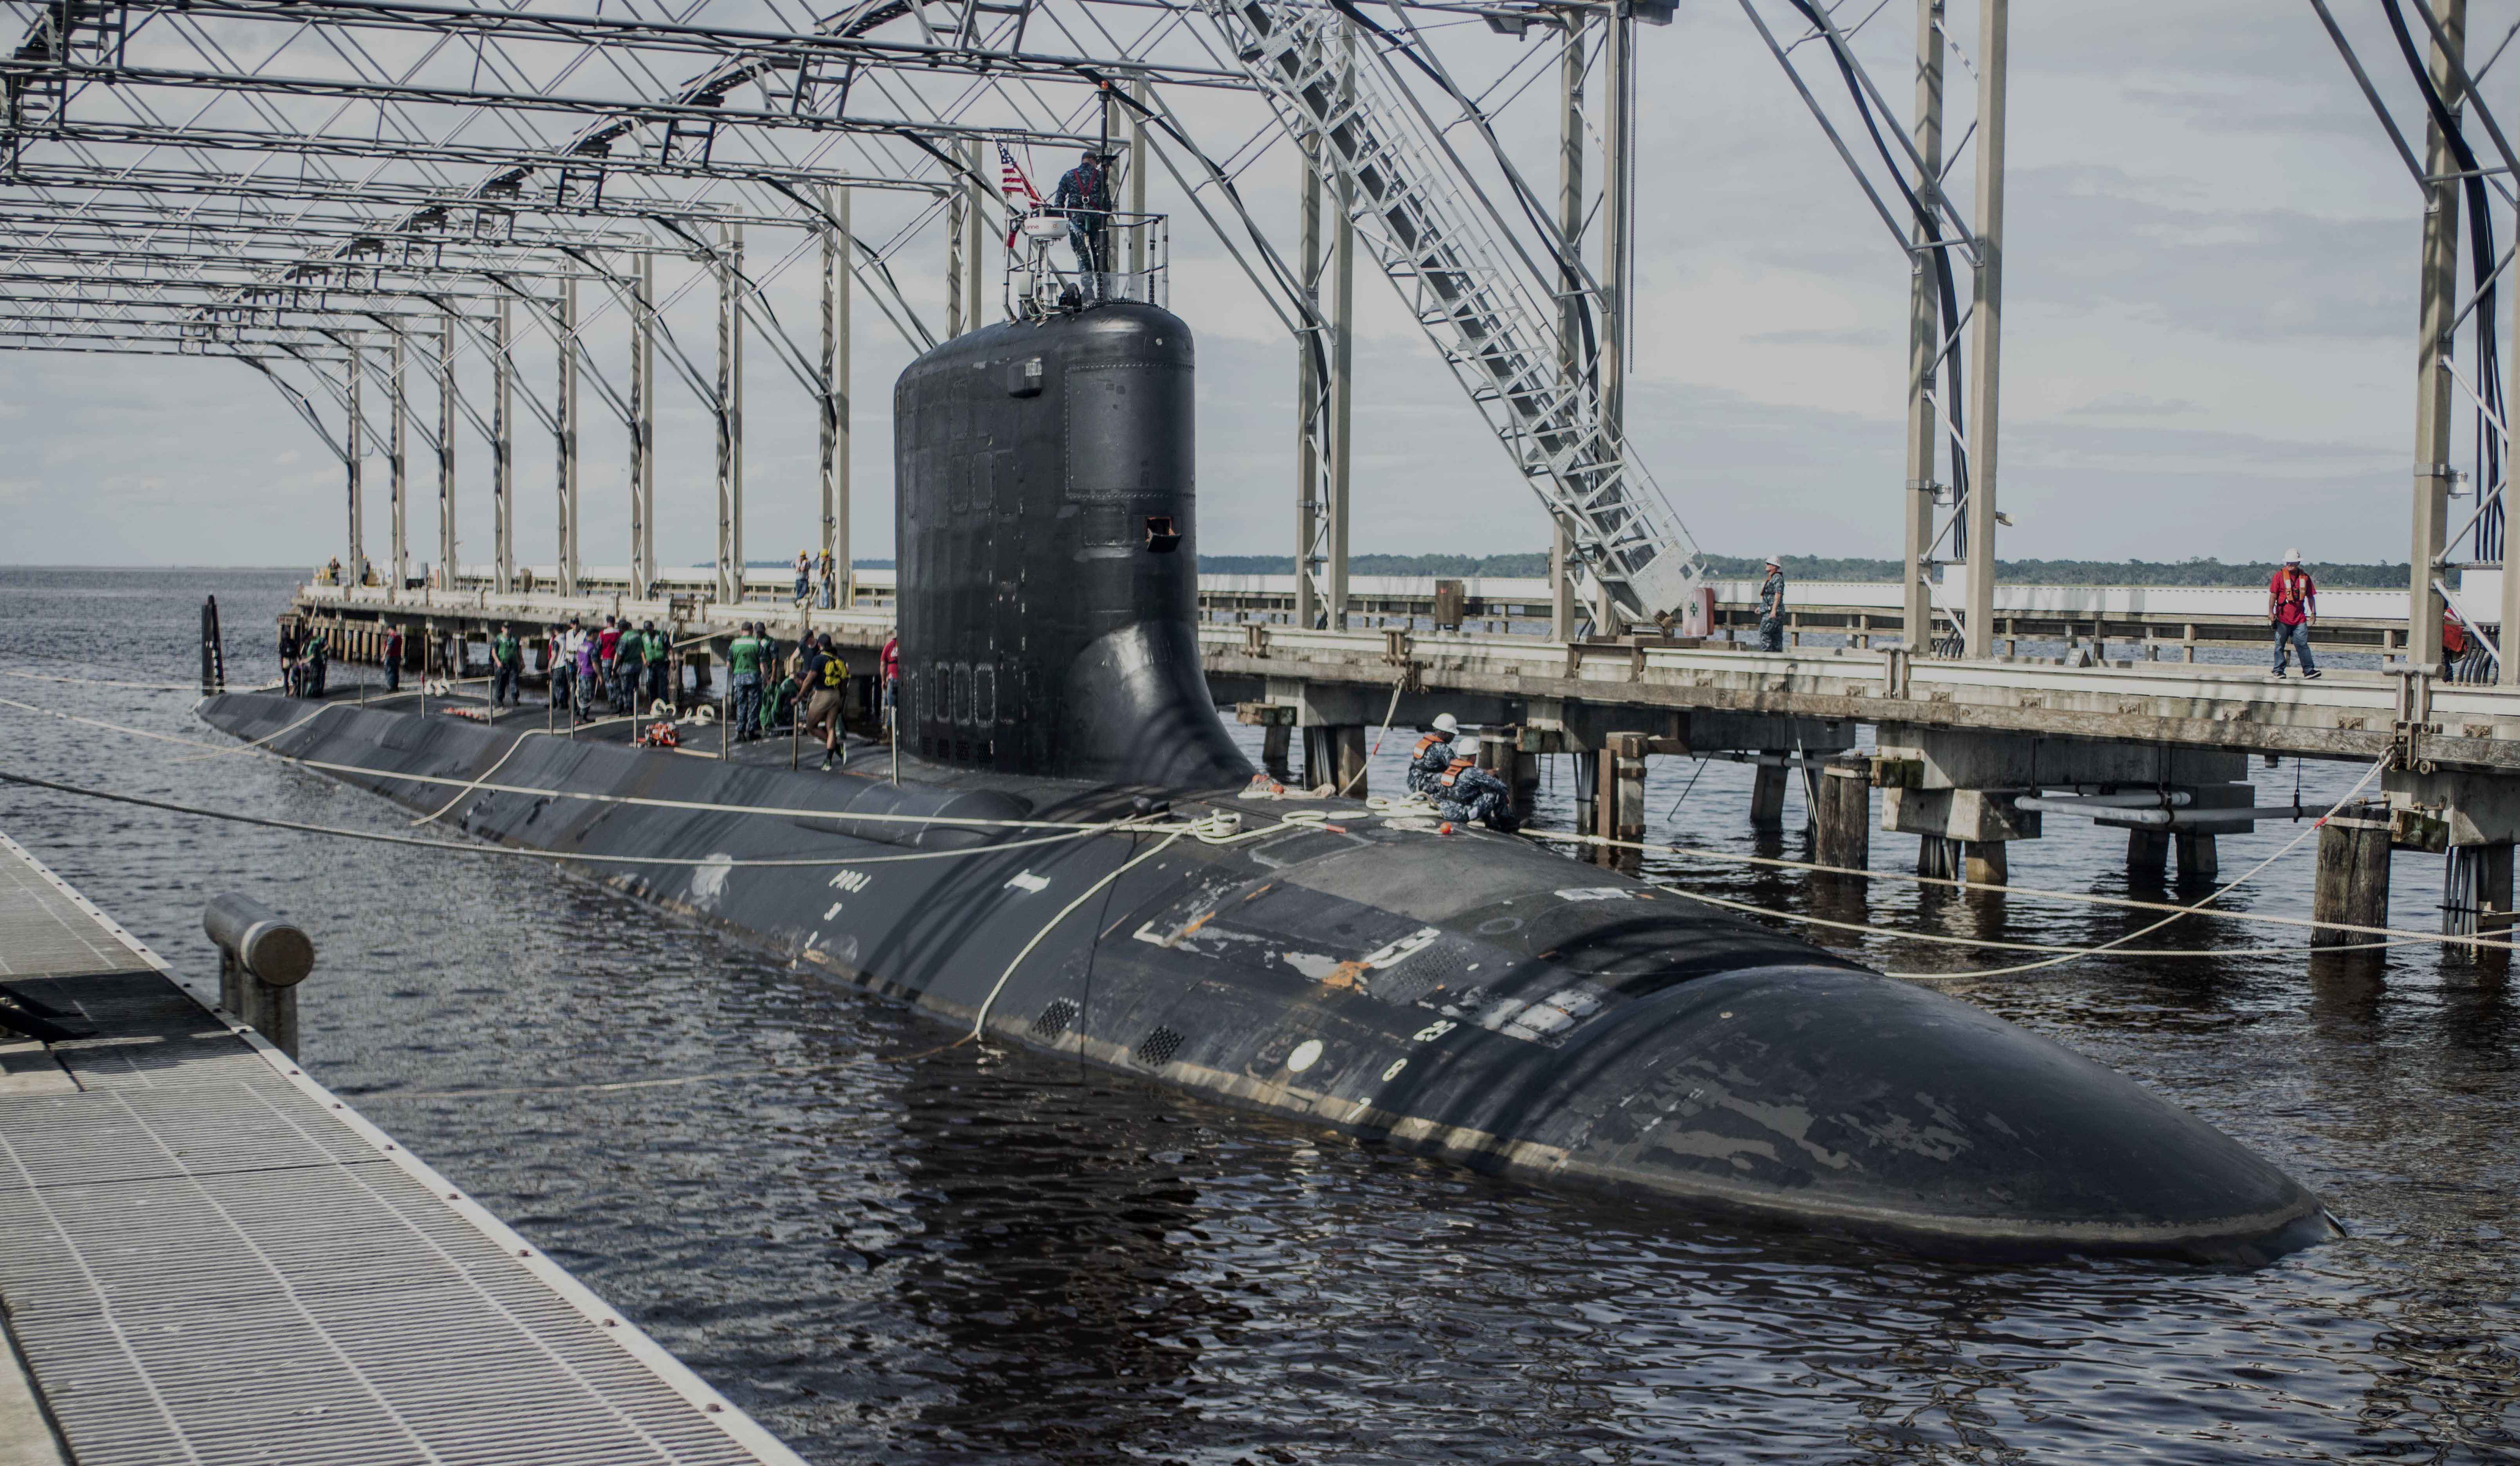 نیروی دریایی ایالات متحده روز دوشنبه بزرگ ترین قرارداد تاریخ خود را بست که به 9 زیردریایی بسیار پیشرفته به ارزش 22 میلیارد دلار مربوط می شود.